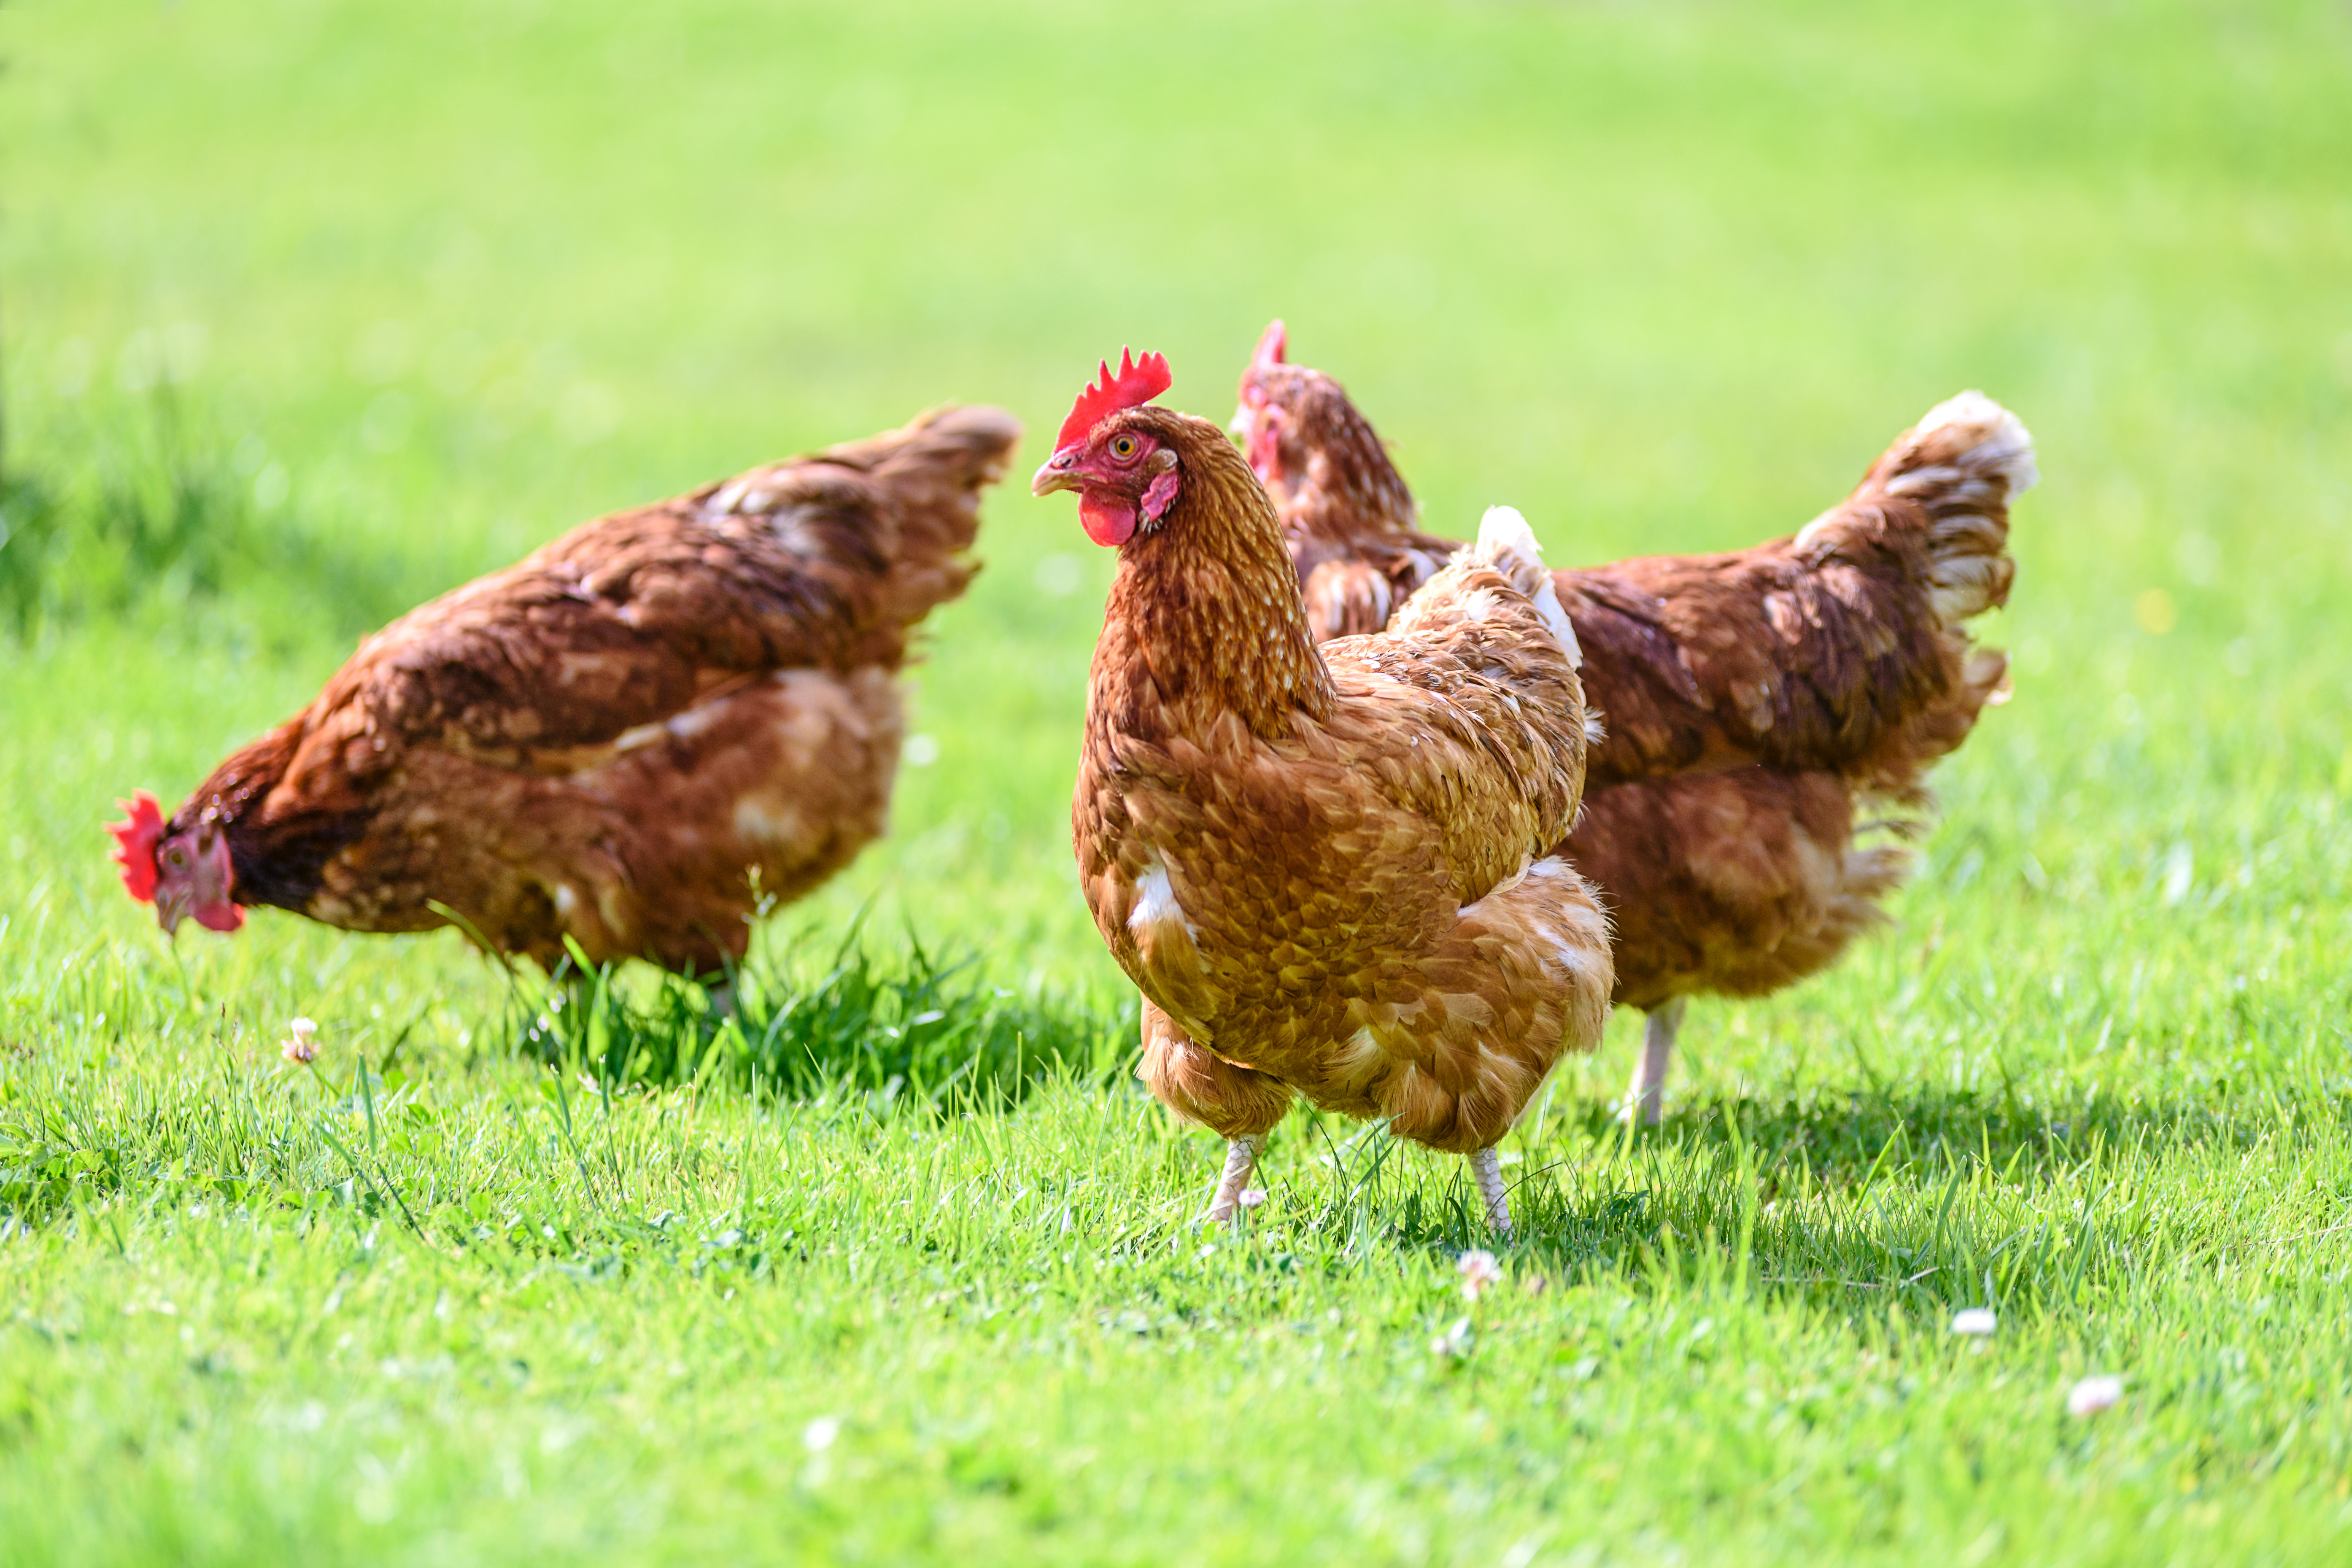 "ماجد الفطيم" تعتمد سياسة جديدة للرفق بالحيوان تلتزم بموجبها ببيع البيض المُنتج خارج الأقفاص فقط بحلول 2032 